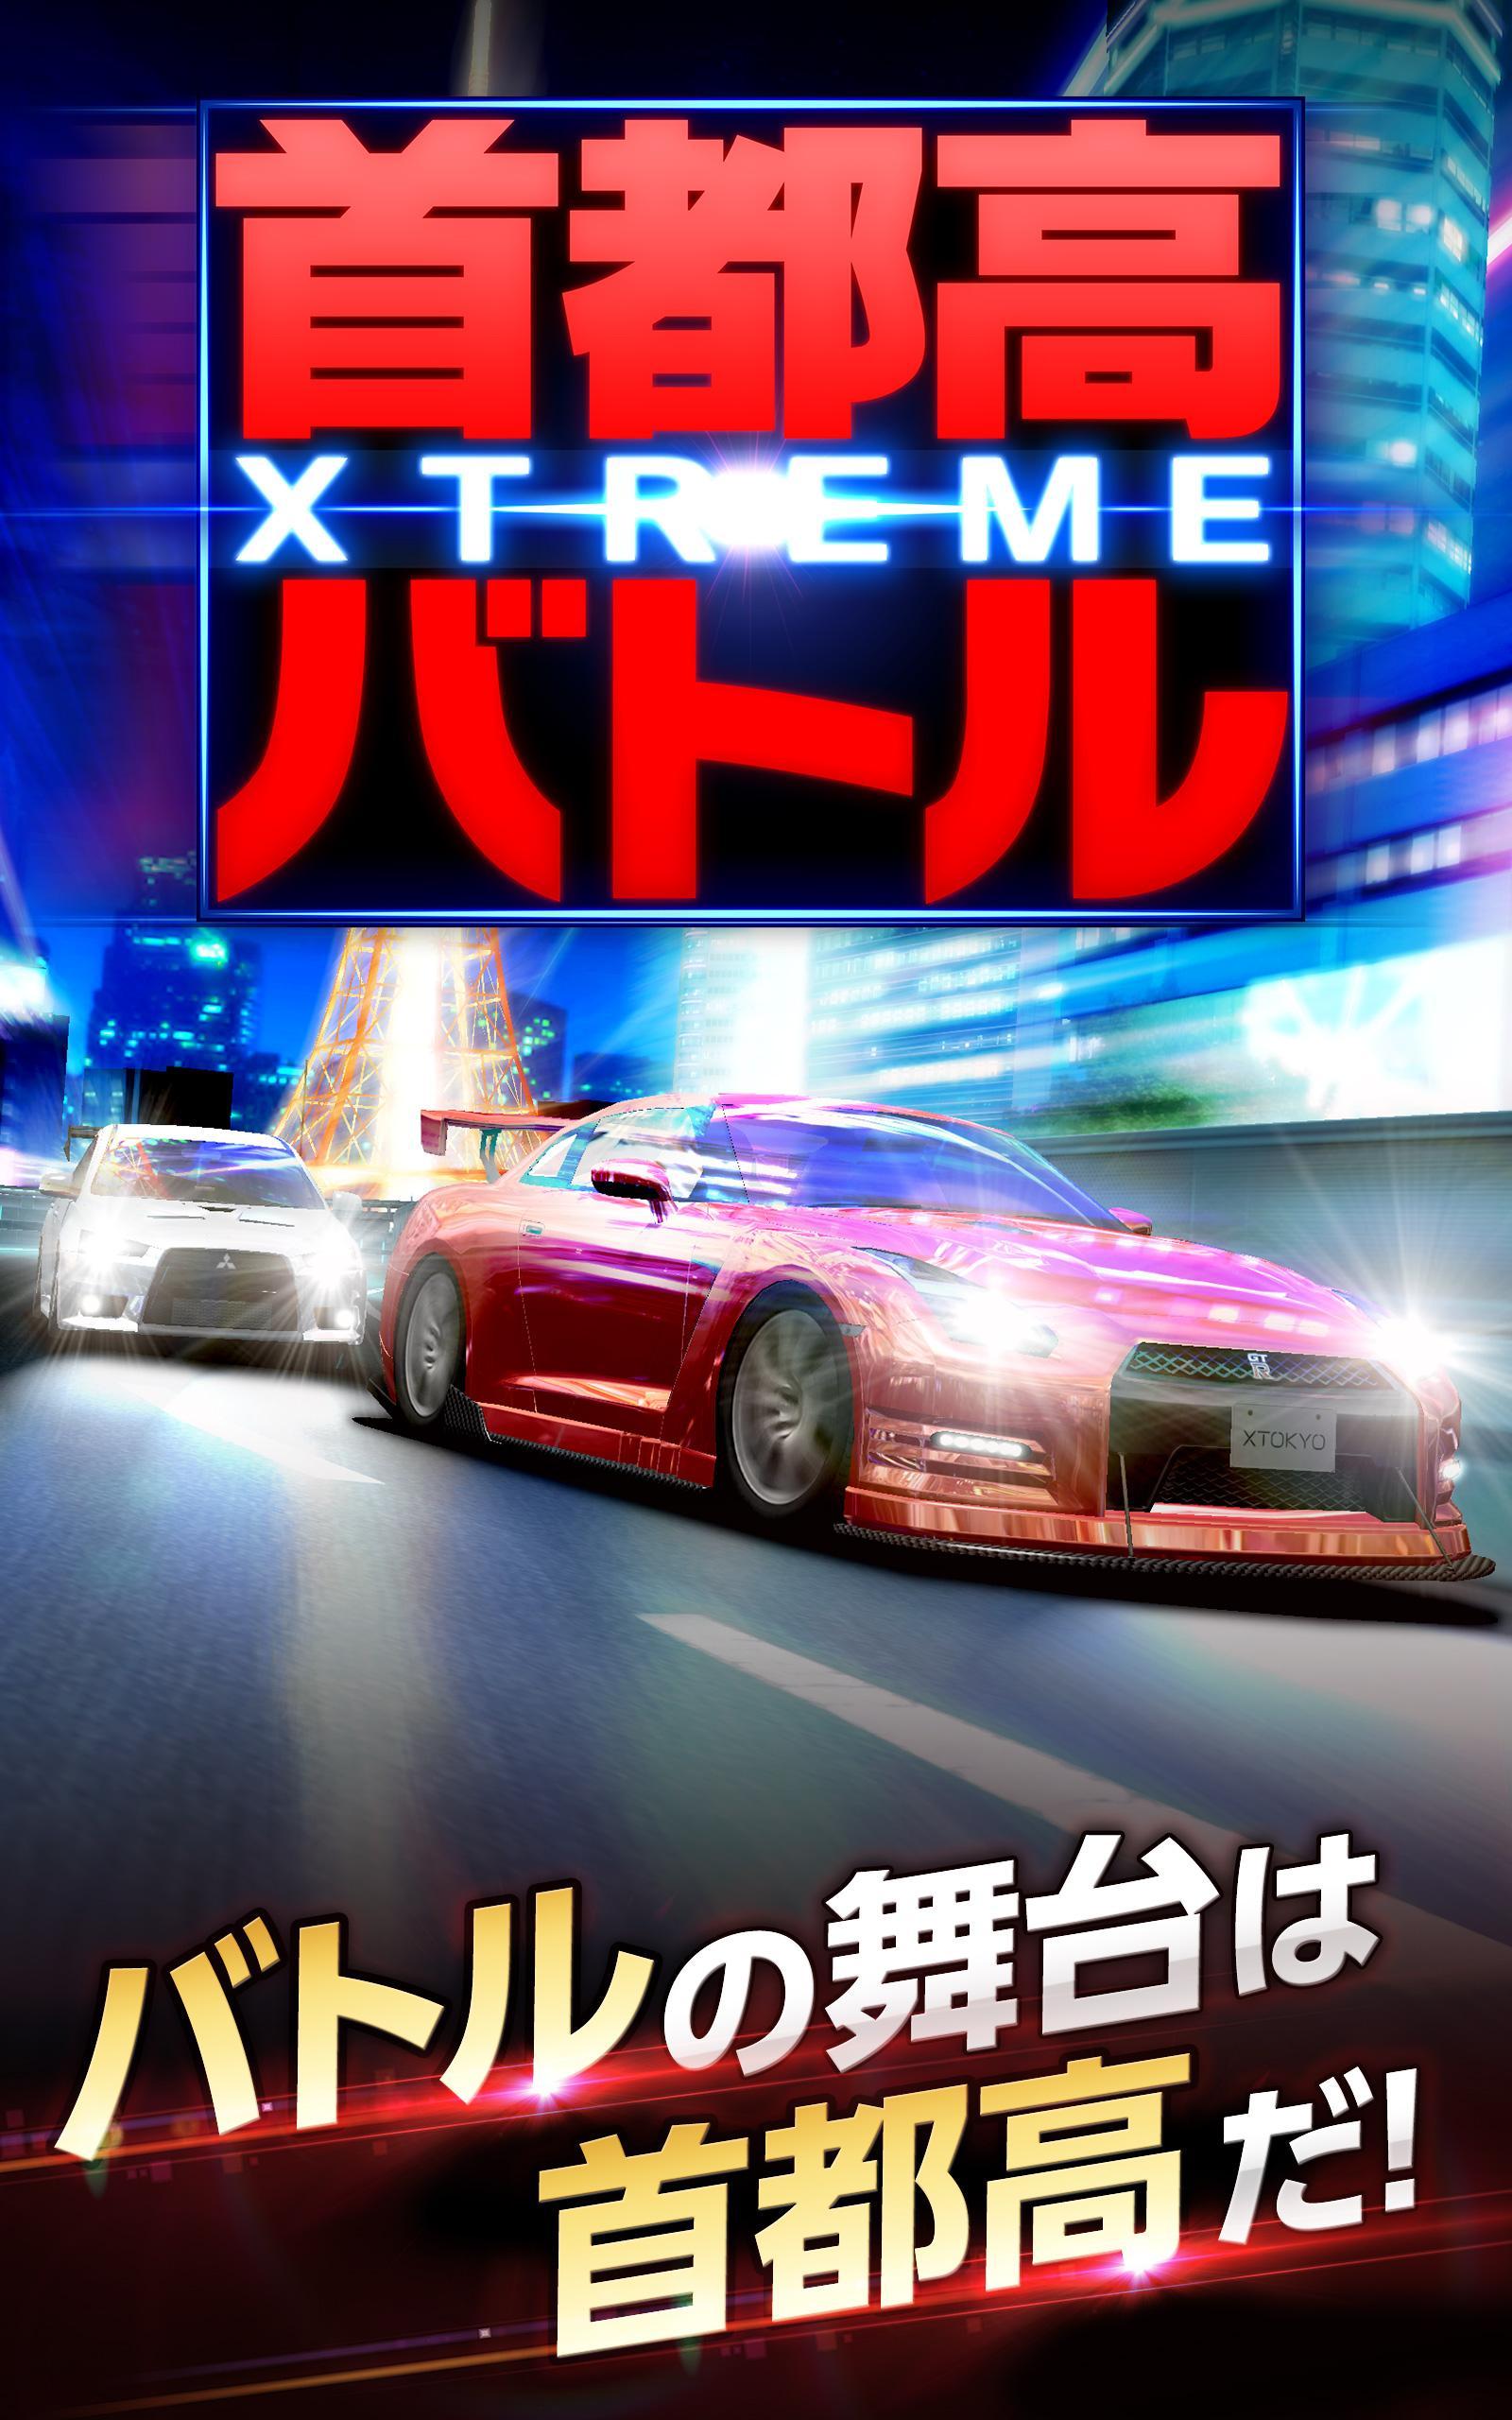 首都高バトル Xtreme For Android Apk Download